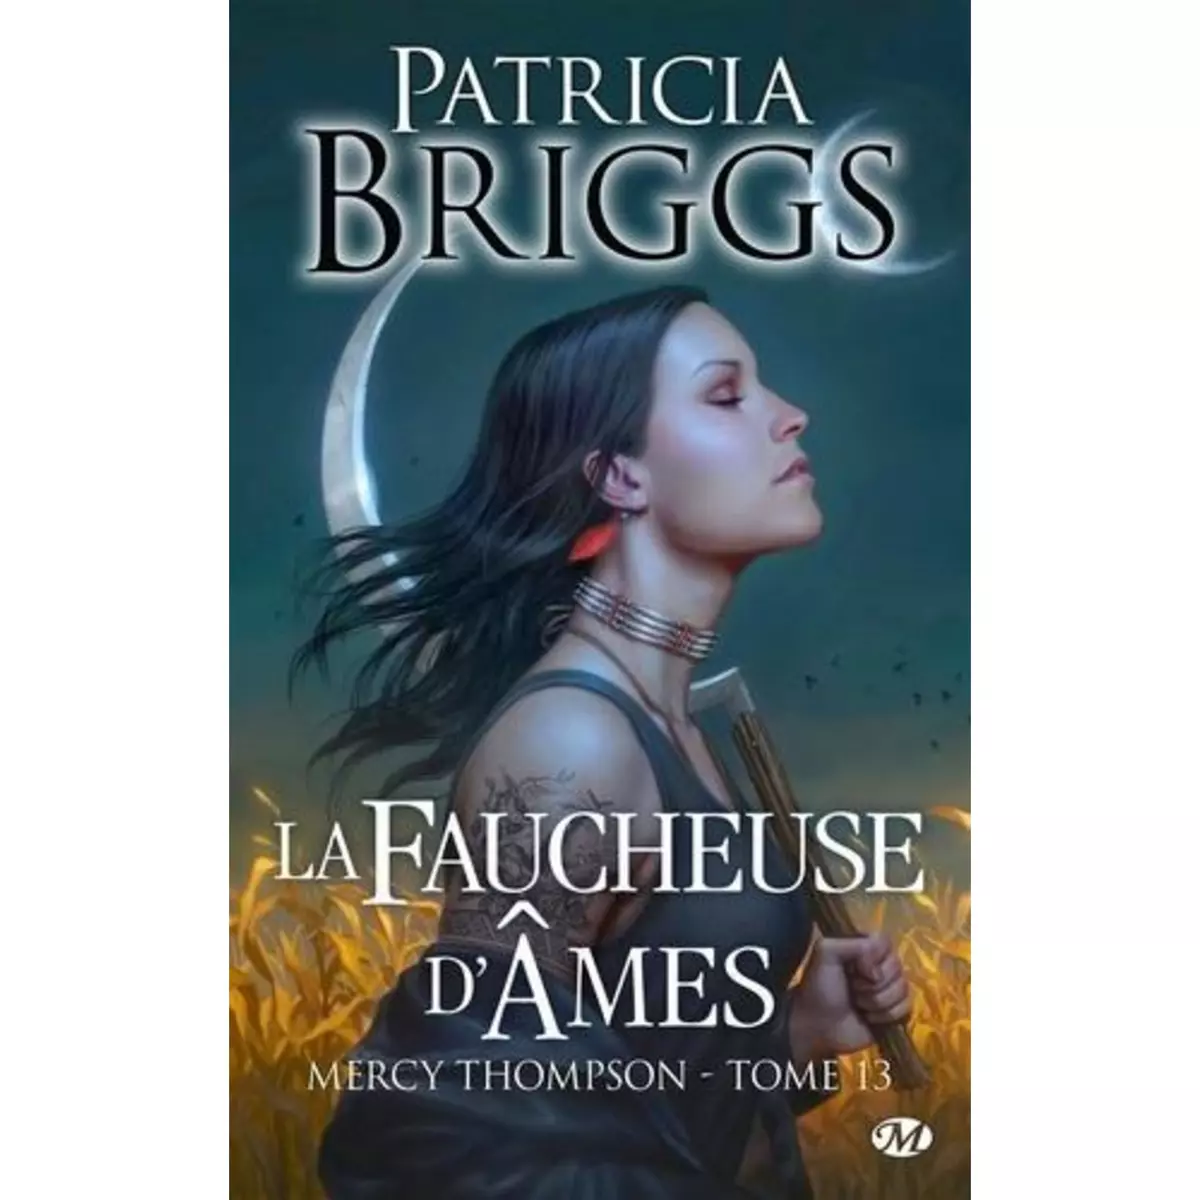  MERCY THOMPSON TOME 13 : LA FAUCHEUSE D'AMES, Briggs Patricia